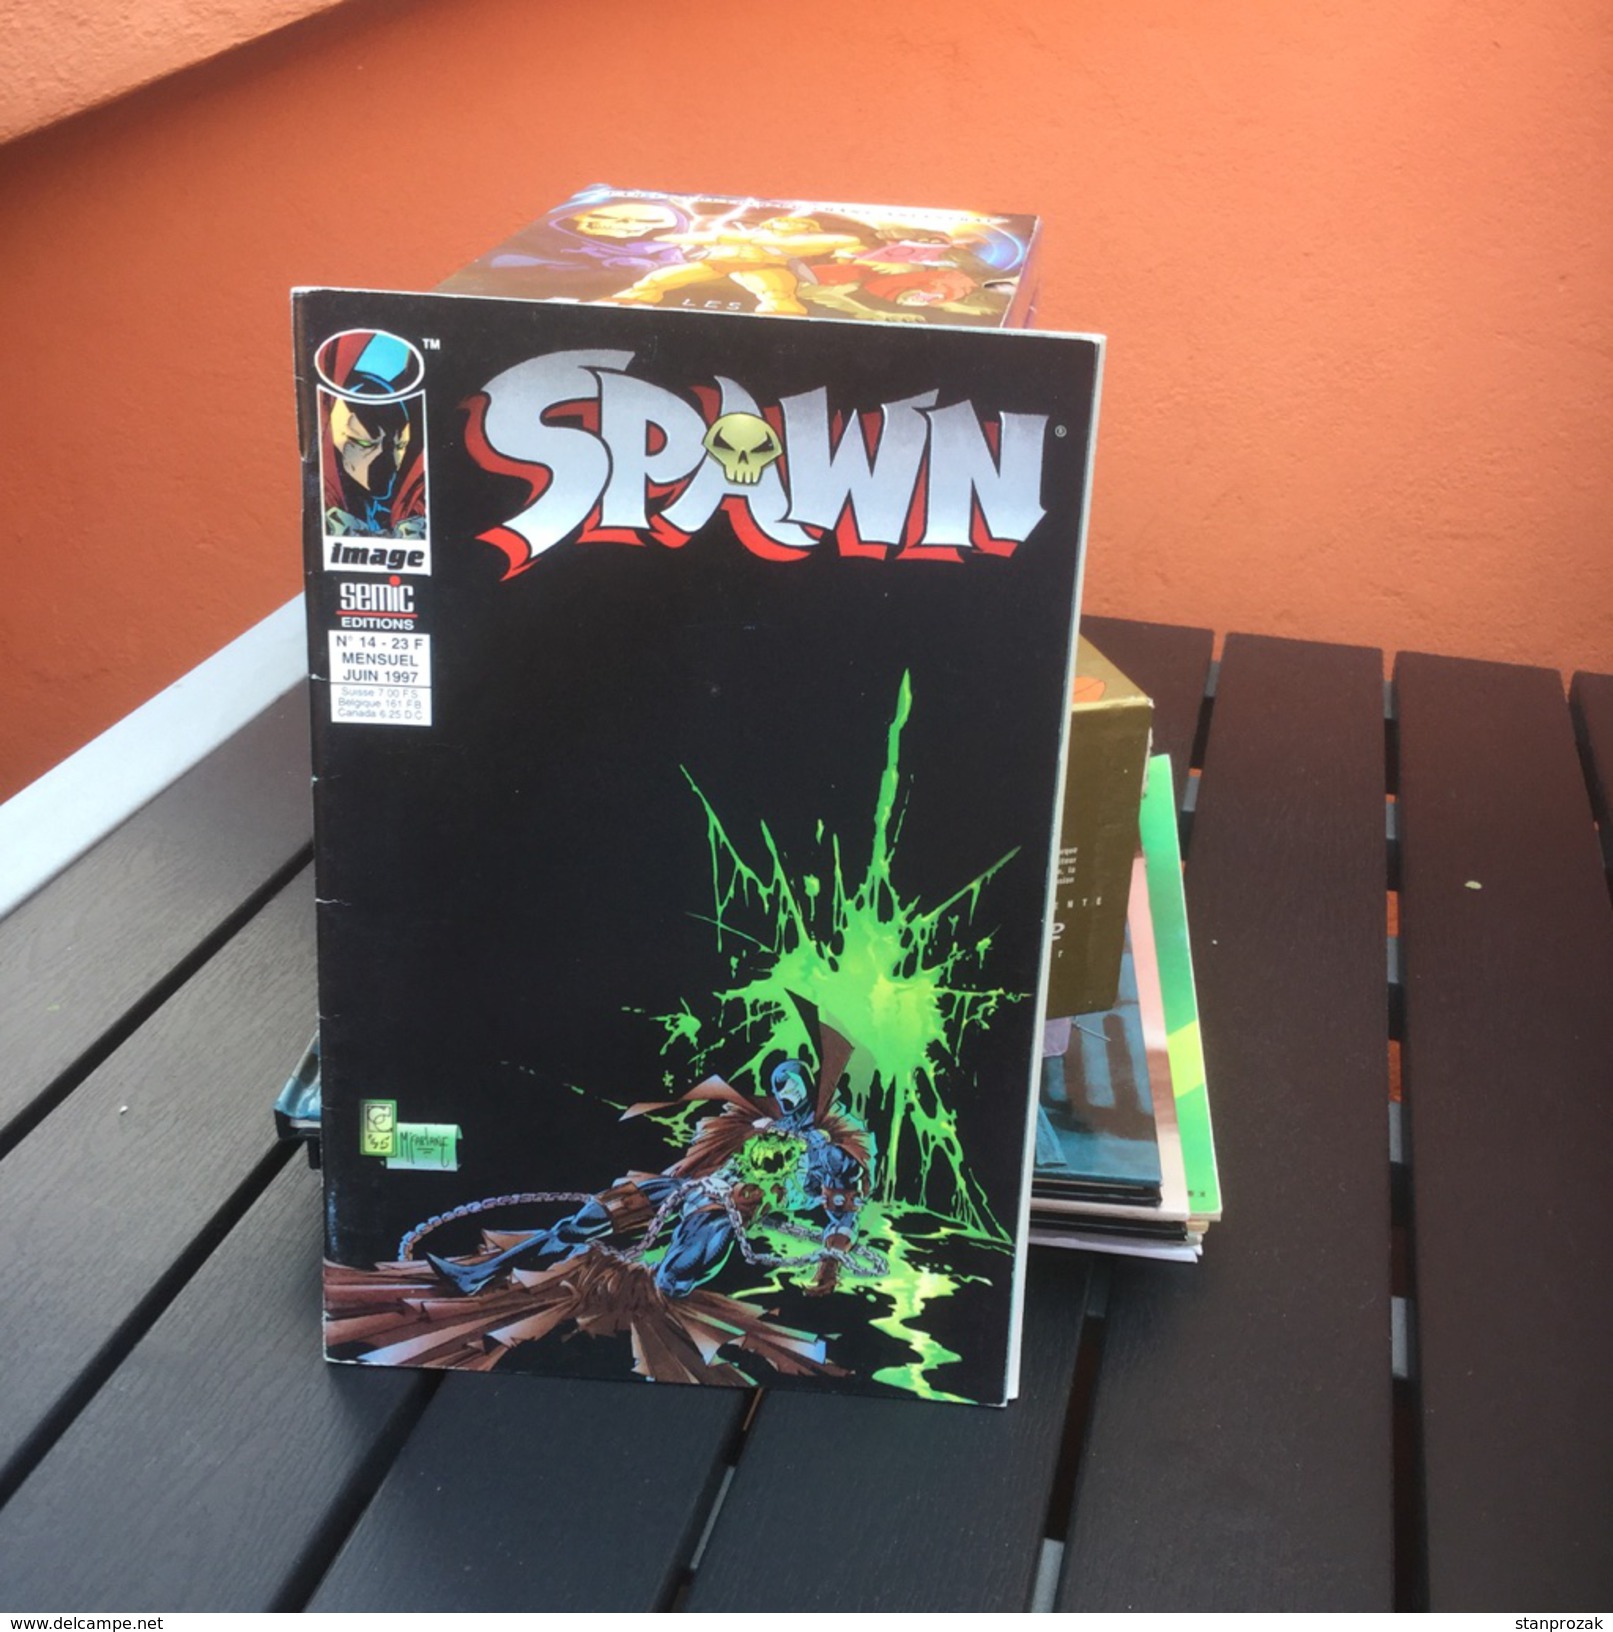 Spawn 14 - Spawn